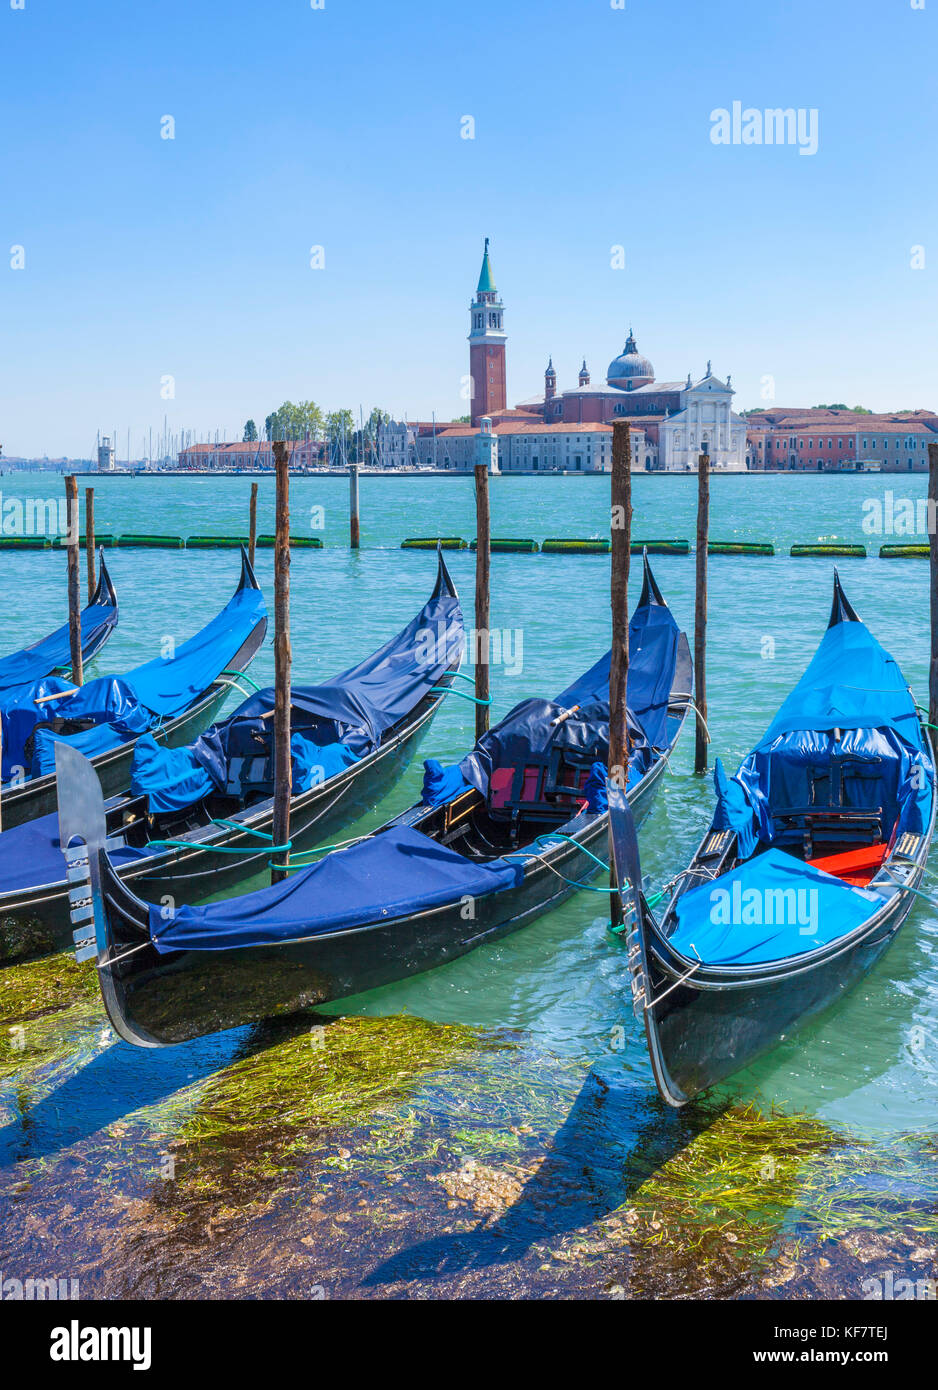 Italia Venezia Italia ormeggiate le gondole del Canal Grande Venezia di fronte all' Isola di San Giorgio Maggiore a Venezia eu europe Foto Stock